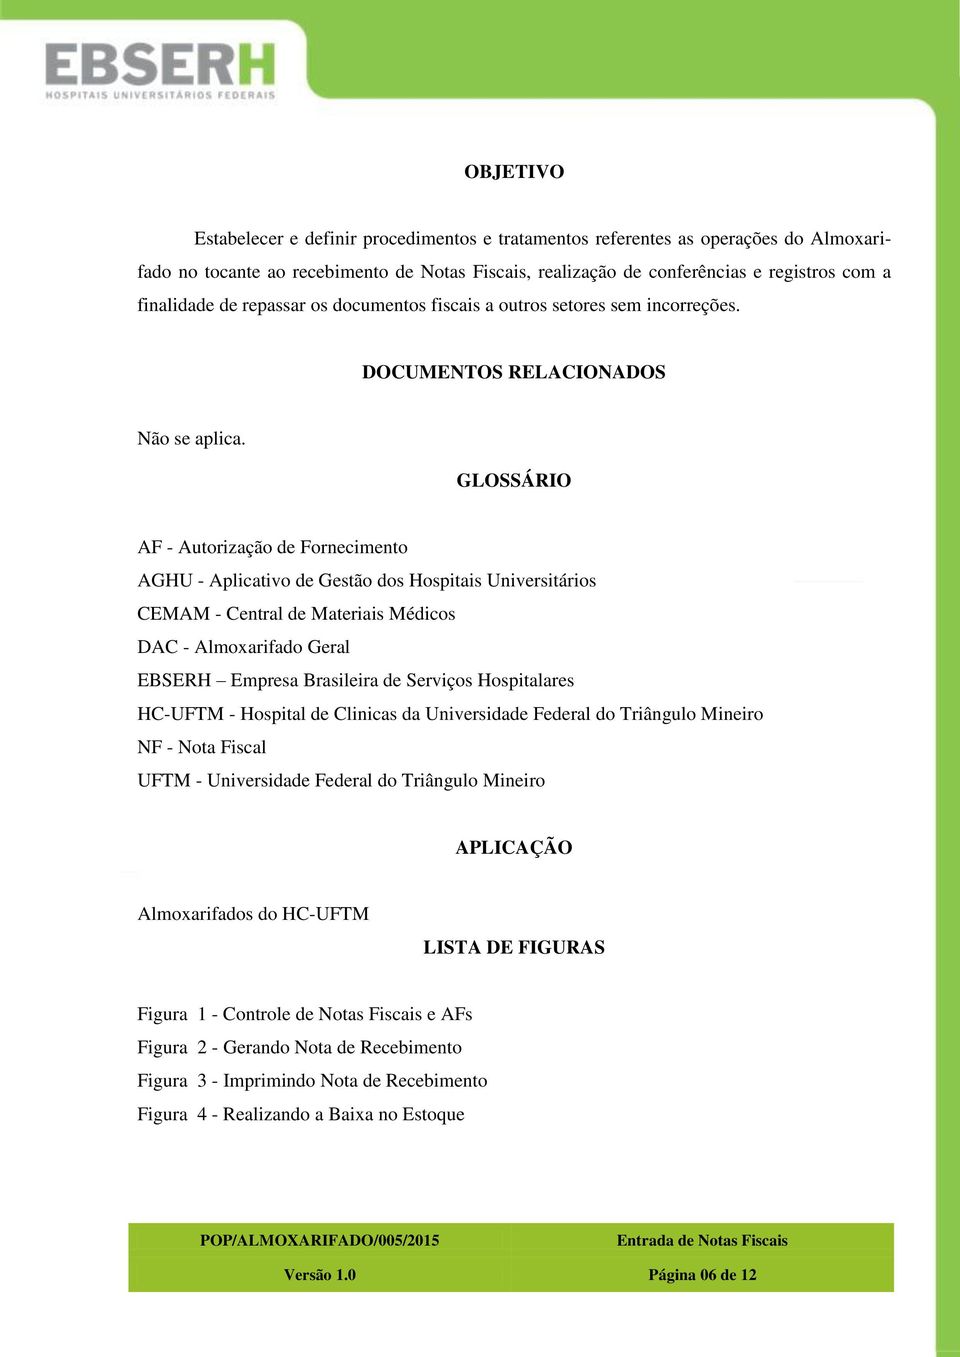 GLOSSÁRIO AF - Autorização de Fornecimento AGHU - Aplicativo de Gestão dos Hospitais Universitários CEMAM - Central de Materiais Médicos DAC - Almoxarifado Geral EBSERH Empresa Brasileira de Serviços